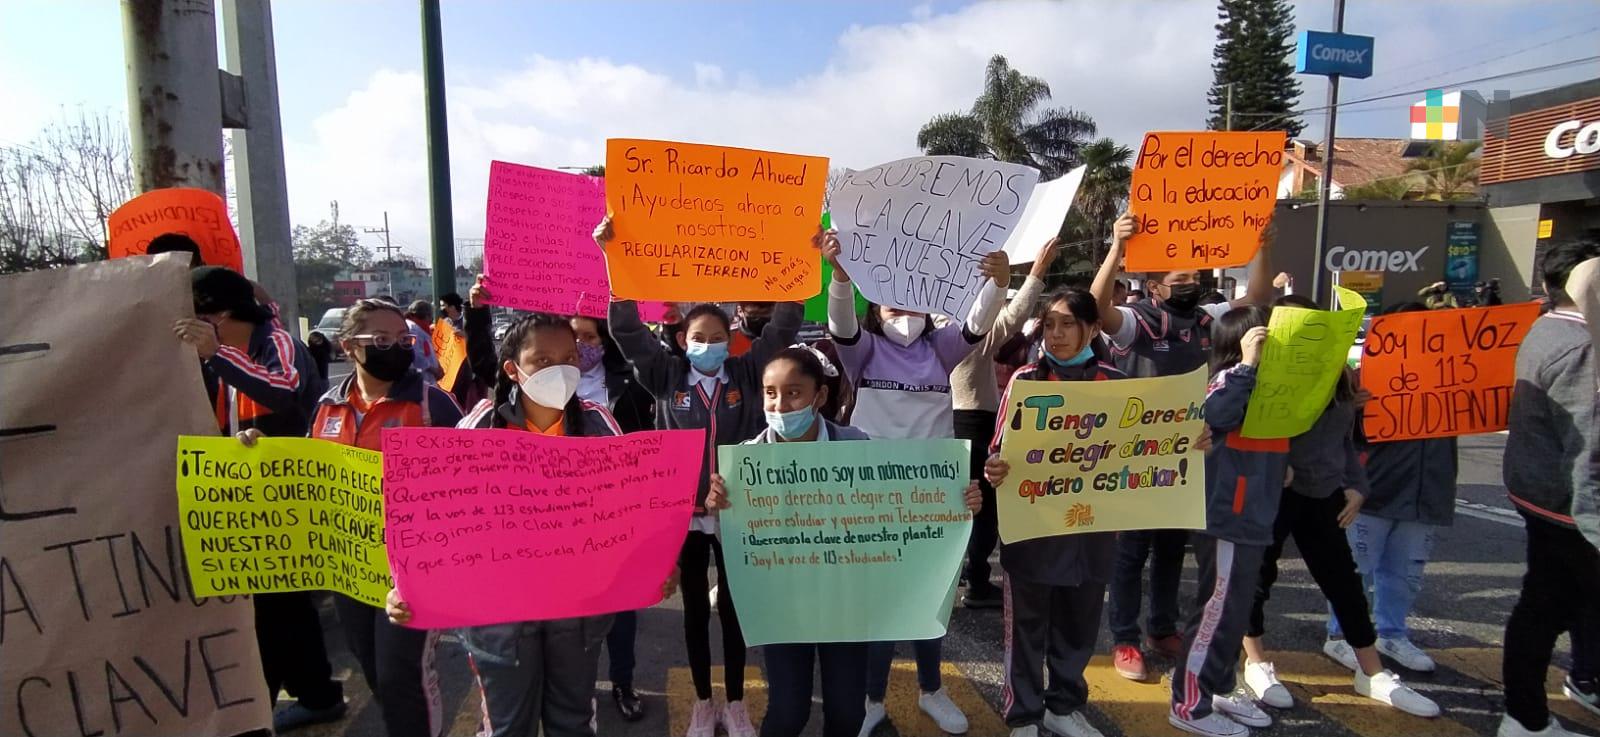 Estudiantes y padres de familia piden clave para Telesecundaria «Manuel Suárez Trujillo» en Xalapa